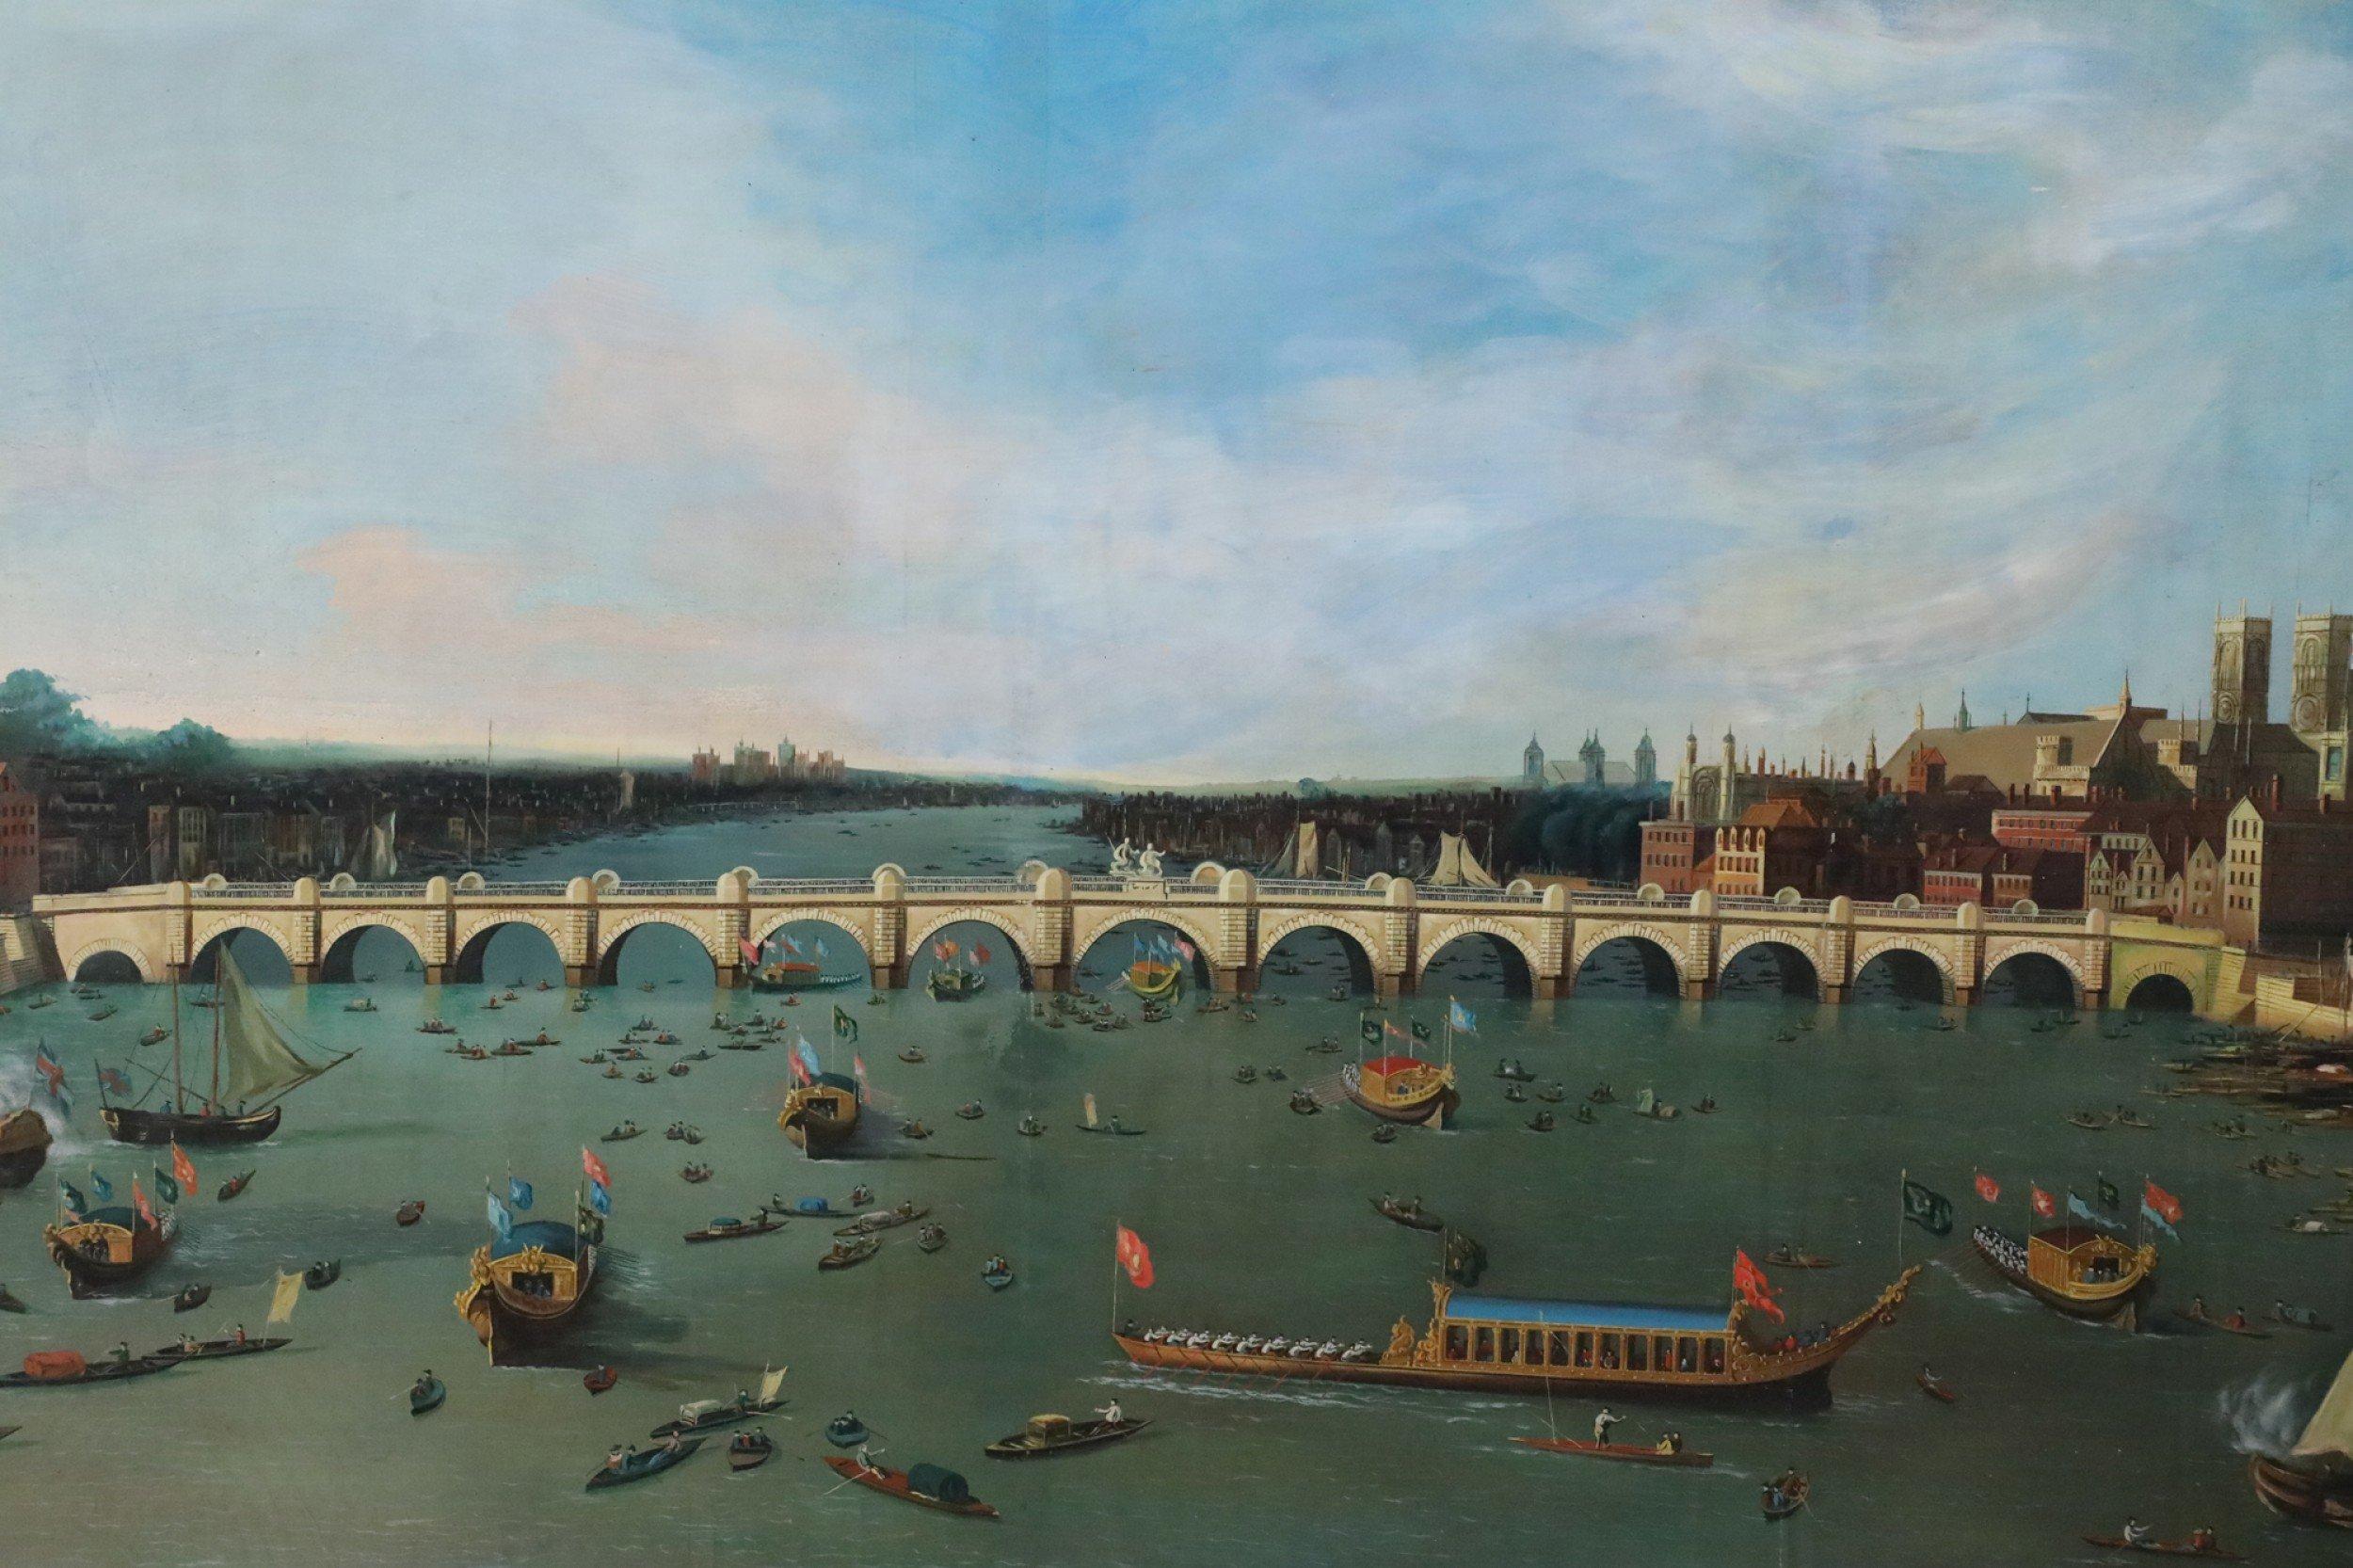 Vintage-Gemälde im venezianischen Stil (20. Jahrhundert) mit einer langen, gewölbten Brücke, die sich über einen Kanal voller Boote und Gondeln aller Größen erstreckt, auf ungerahmter, rechteckiger Leinwand.
 